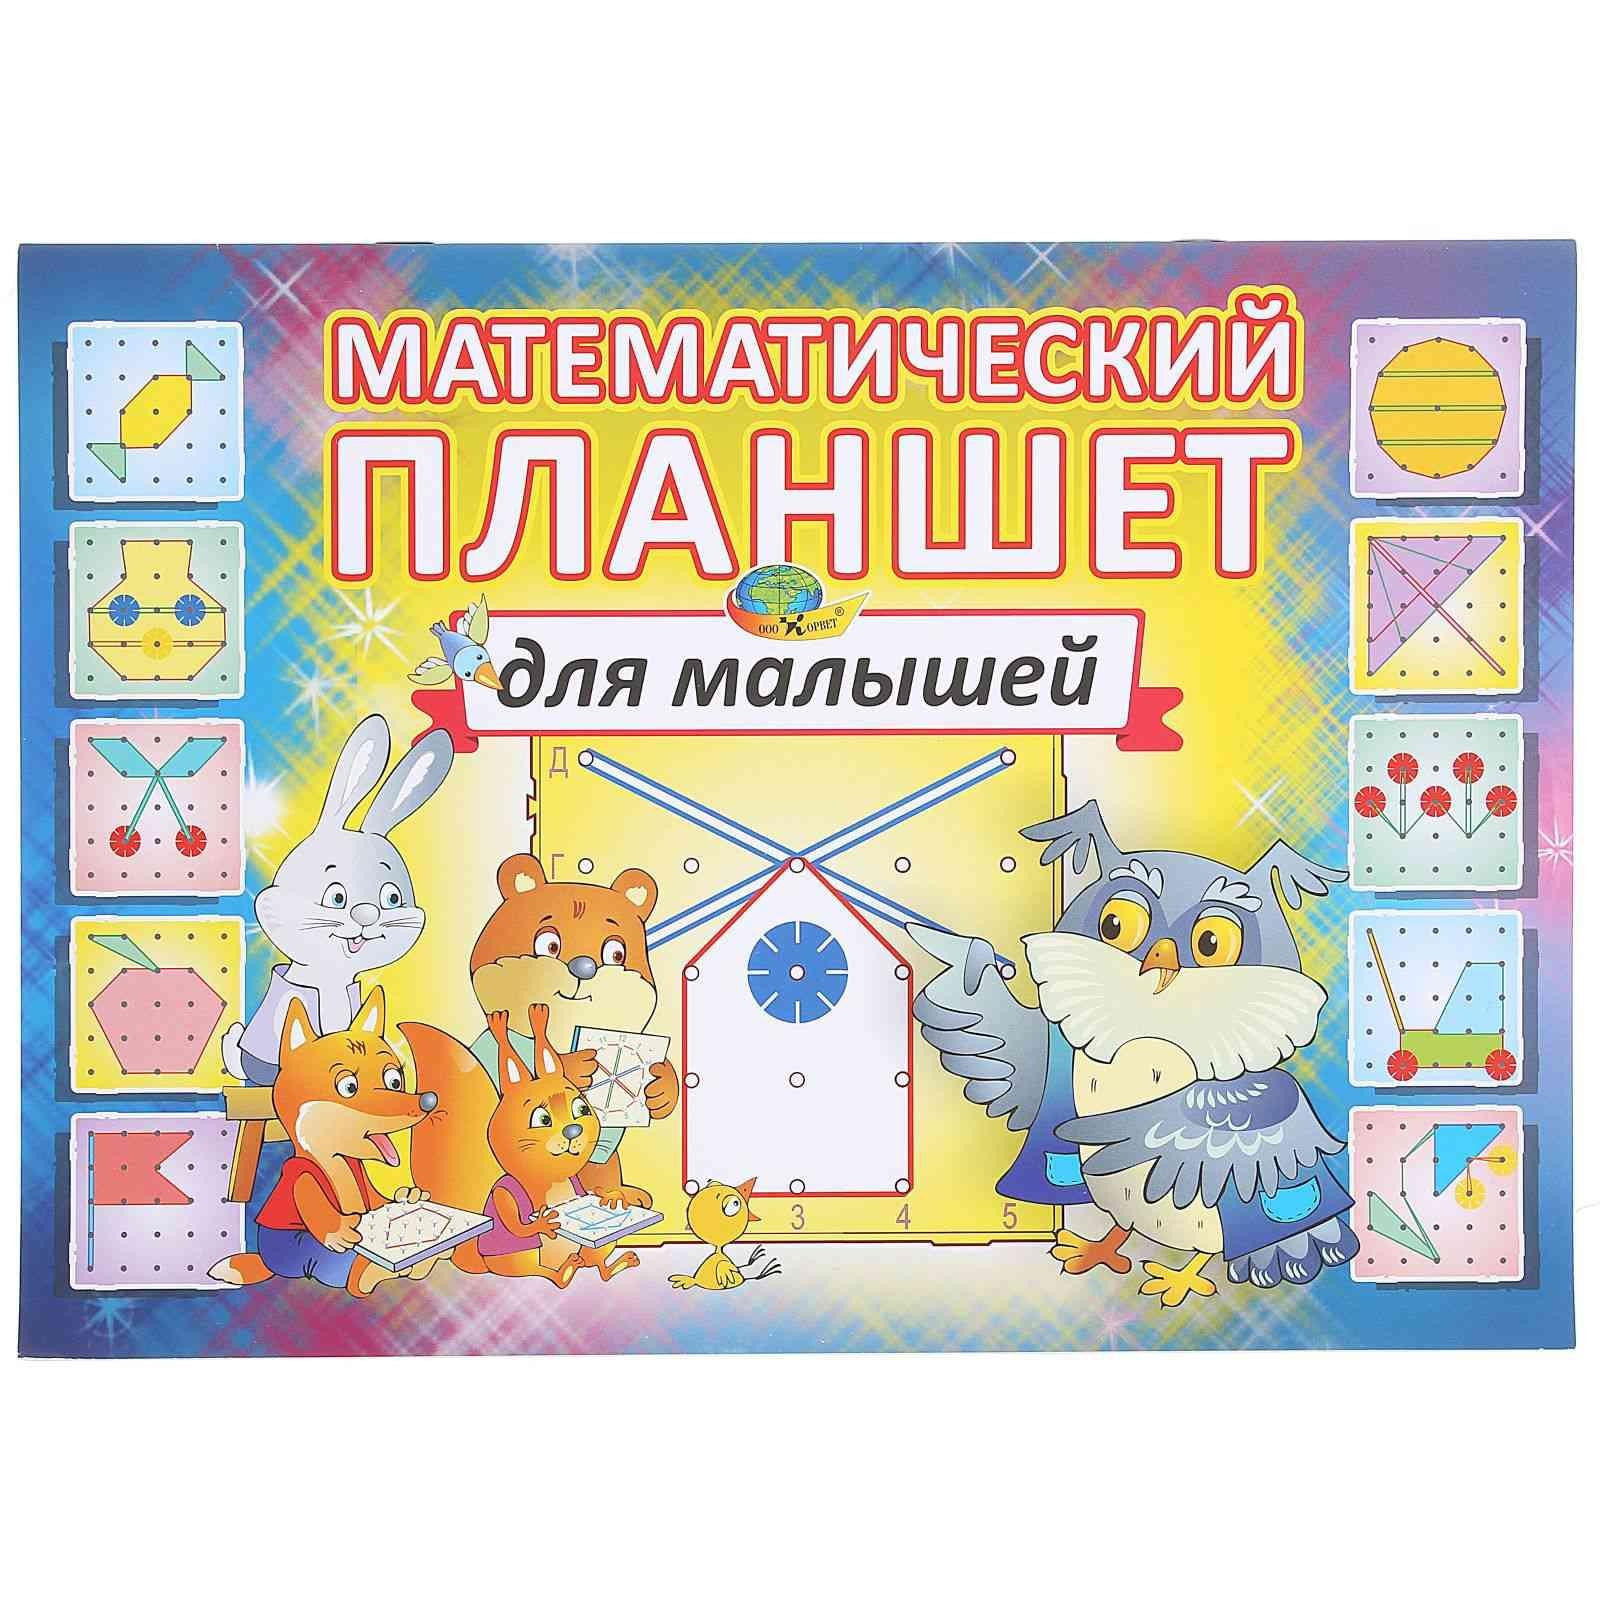 Игровой материал "Математический планшет для малышей"